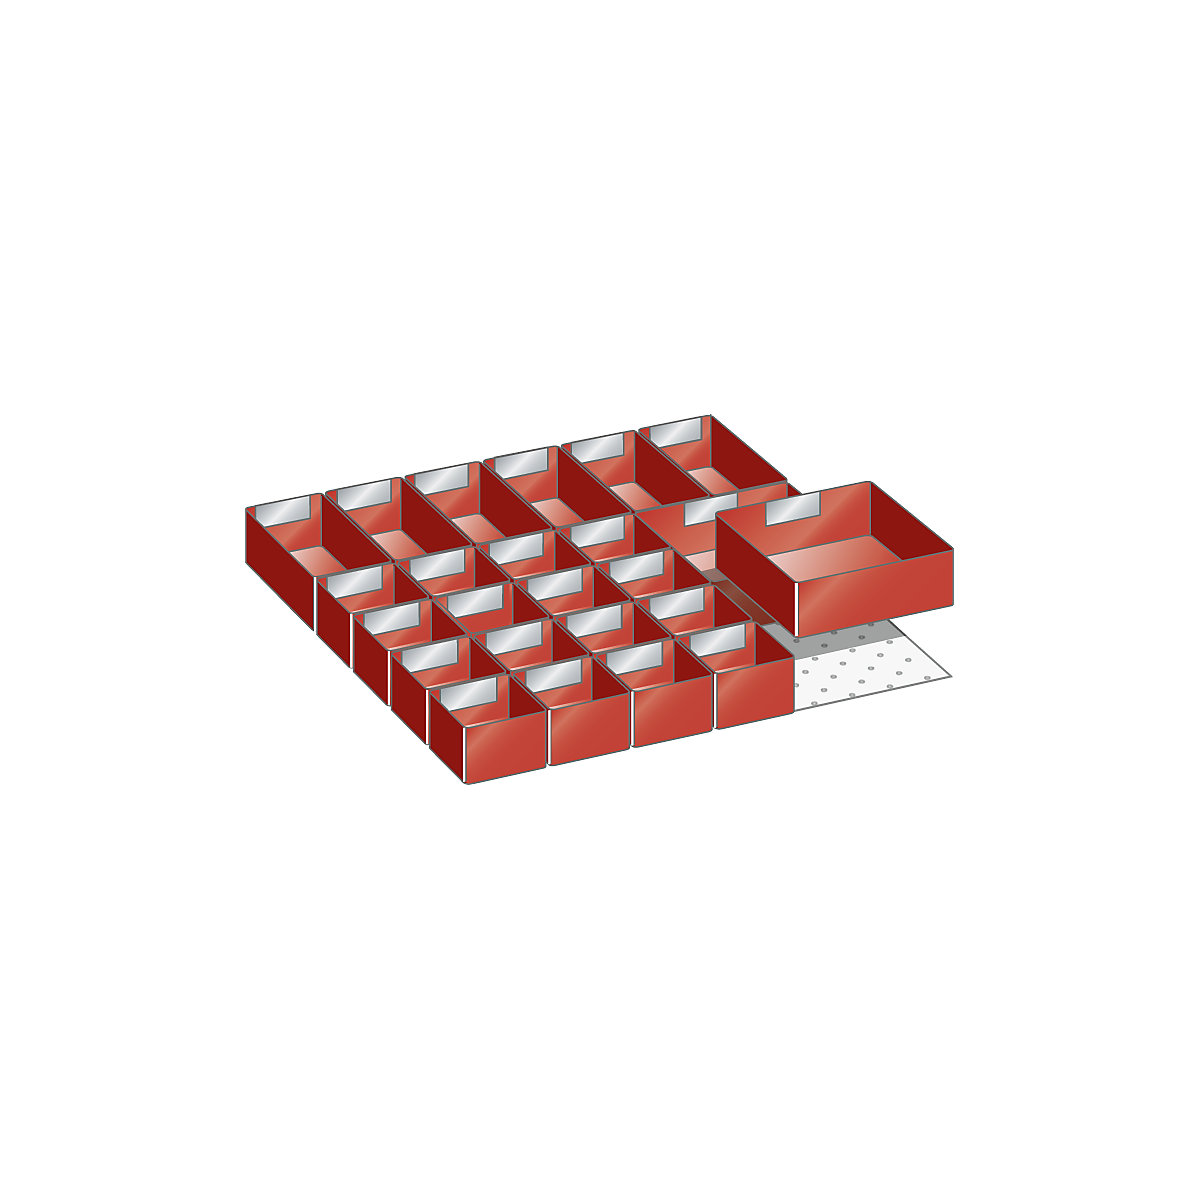 Compartimentation tiroirs – LISTA, jeu de godets de compartimentation, 24 éléments, pour hauteur façade 75 mm-2